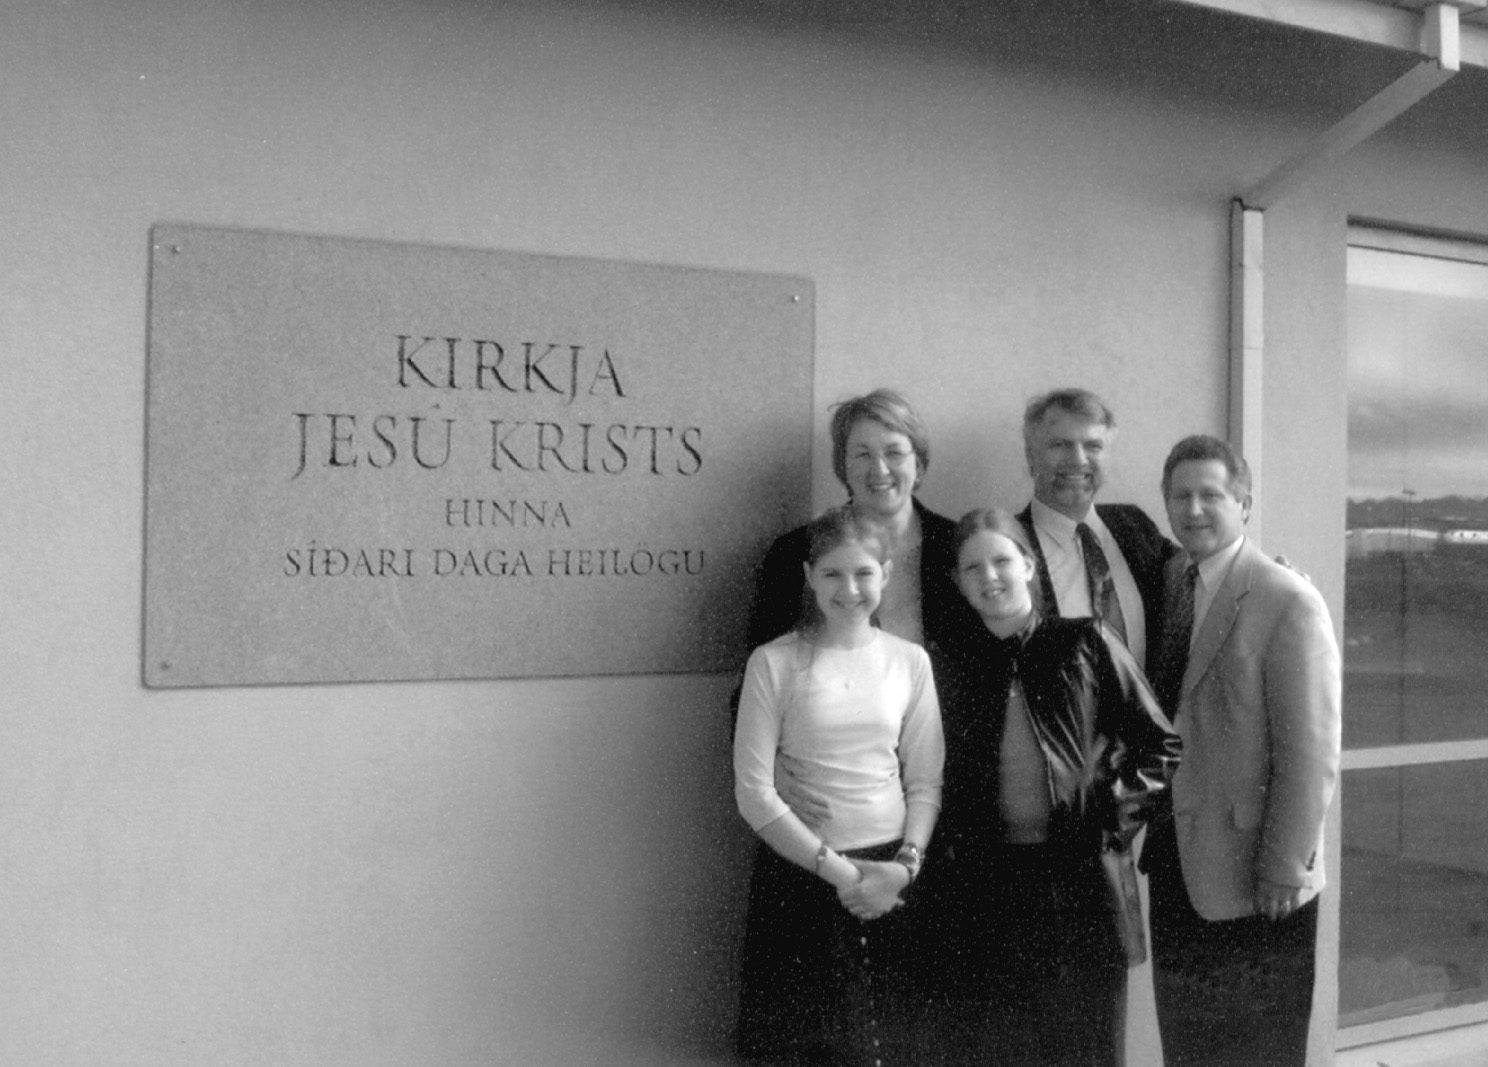 Right to left, Fred E. Woods with members of the Sigurðsson family: Guðmundur Sigurðsson, Regína Ösp Guðmundsdóttir, Valgerður Knútsdóttir, and Rebekka Rán Guðmundsdóttir.  Courtesy of Fred E.Woods